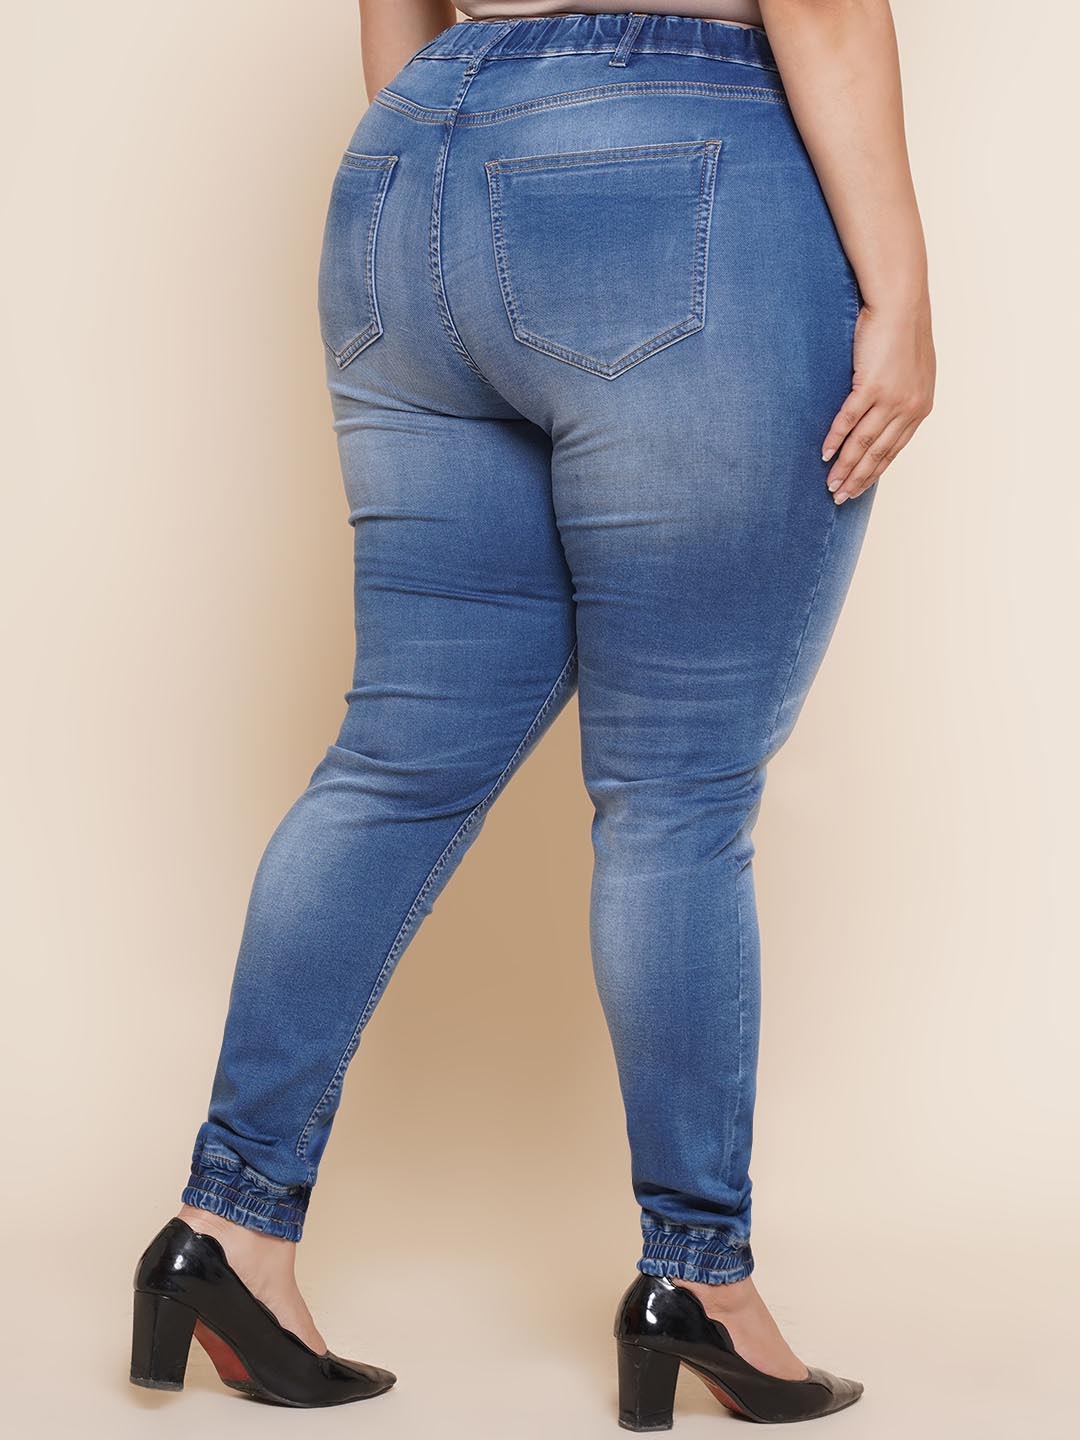 bottomwear_kiaahvi/jeans/KIJ6013/kij6013-5.jpg